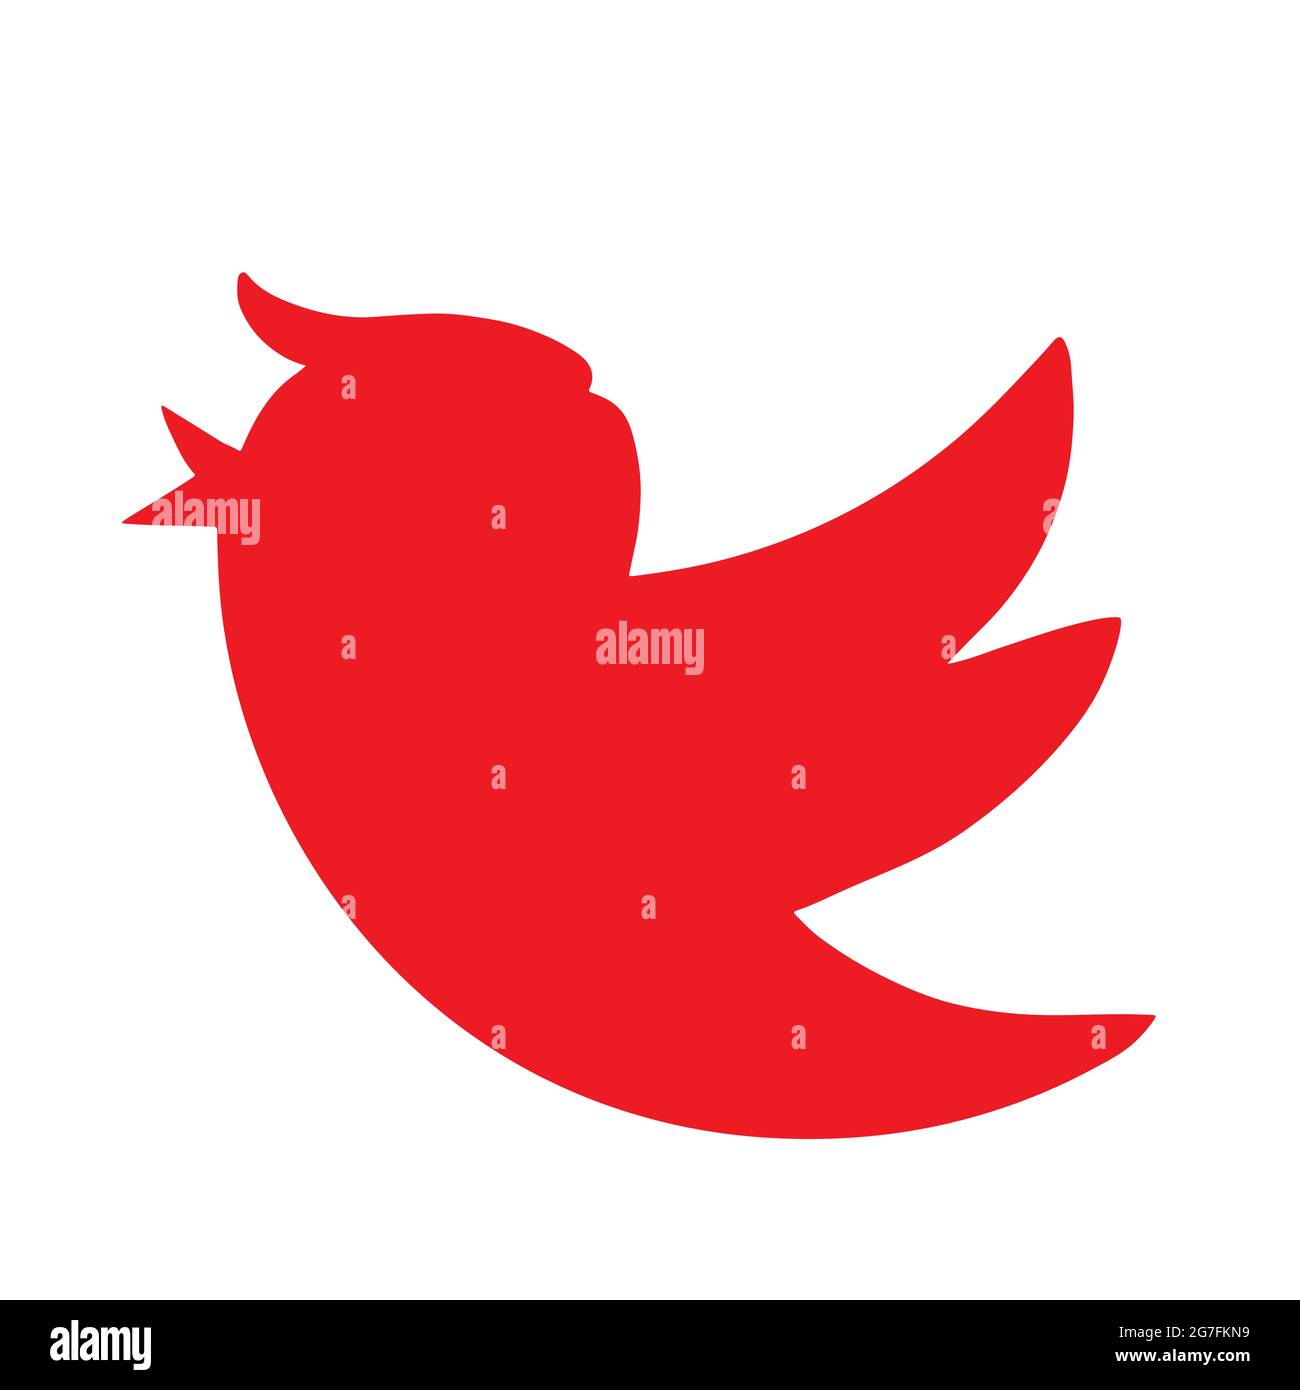 Donald Trump Twitter-Symbol Für Social Media Bird. Vektorgrafik. Stock Vektor